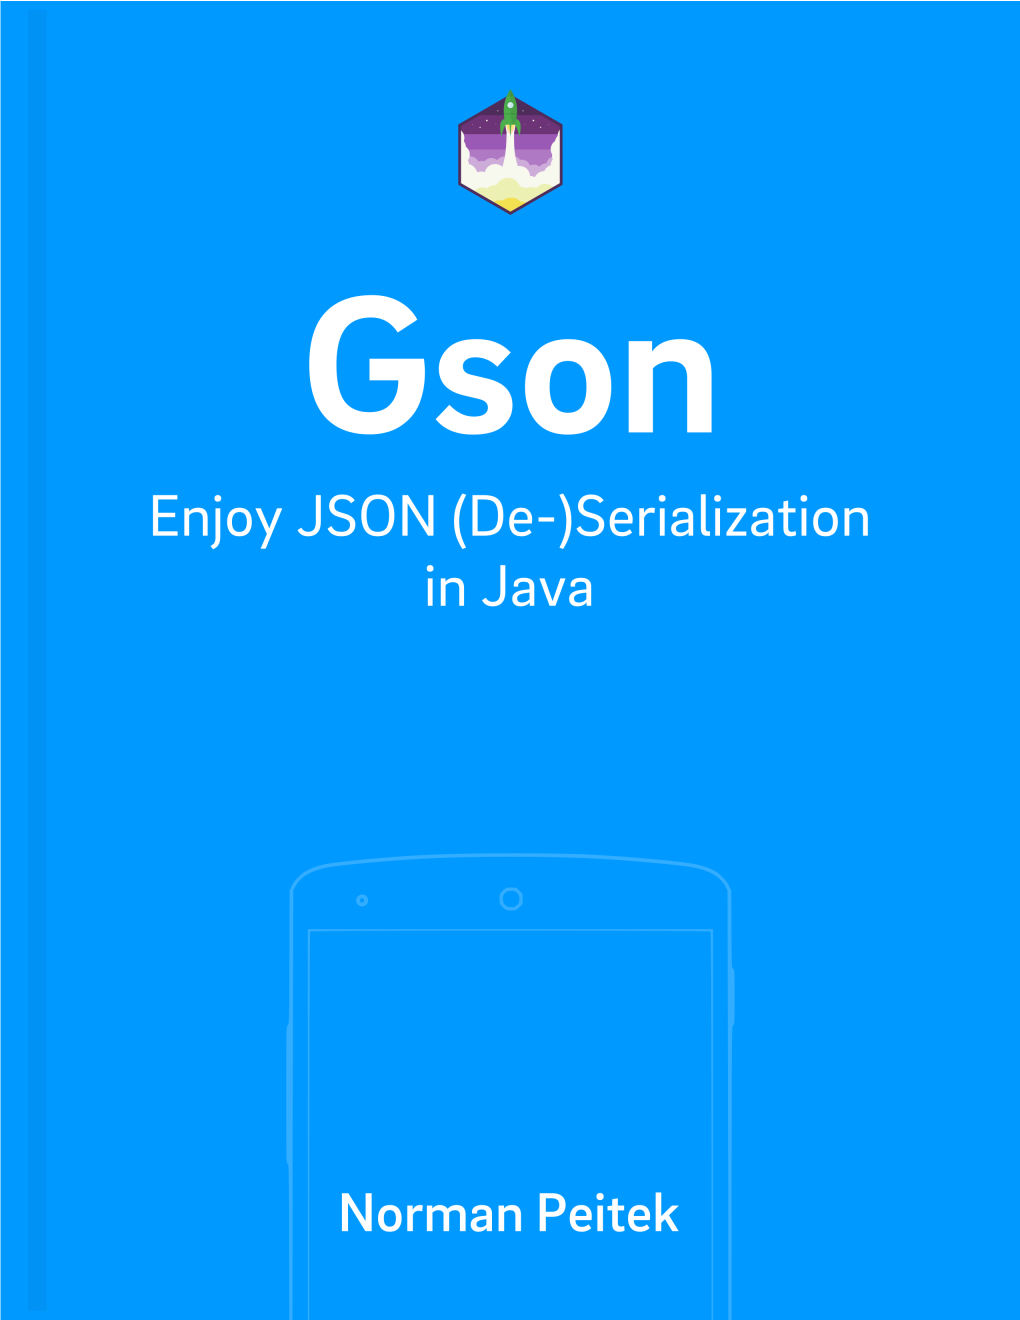 Gson: Enjoy JSON (De-)Serialization in Java